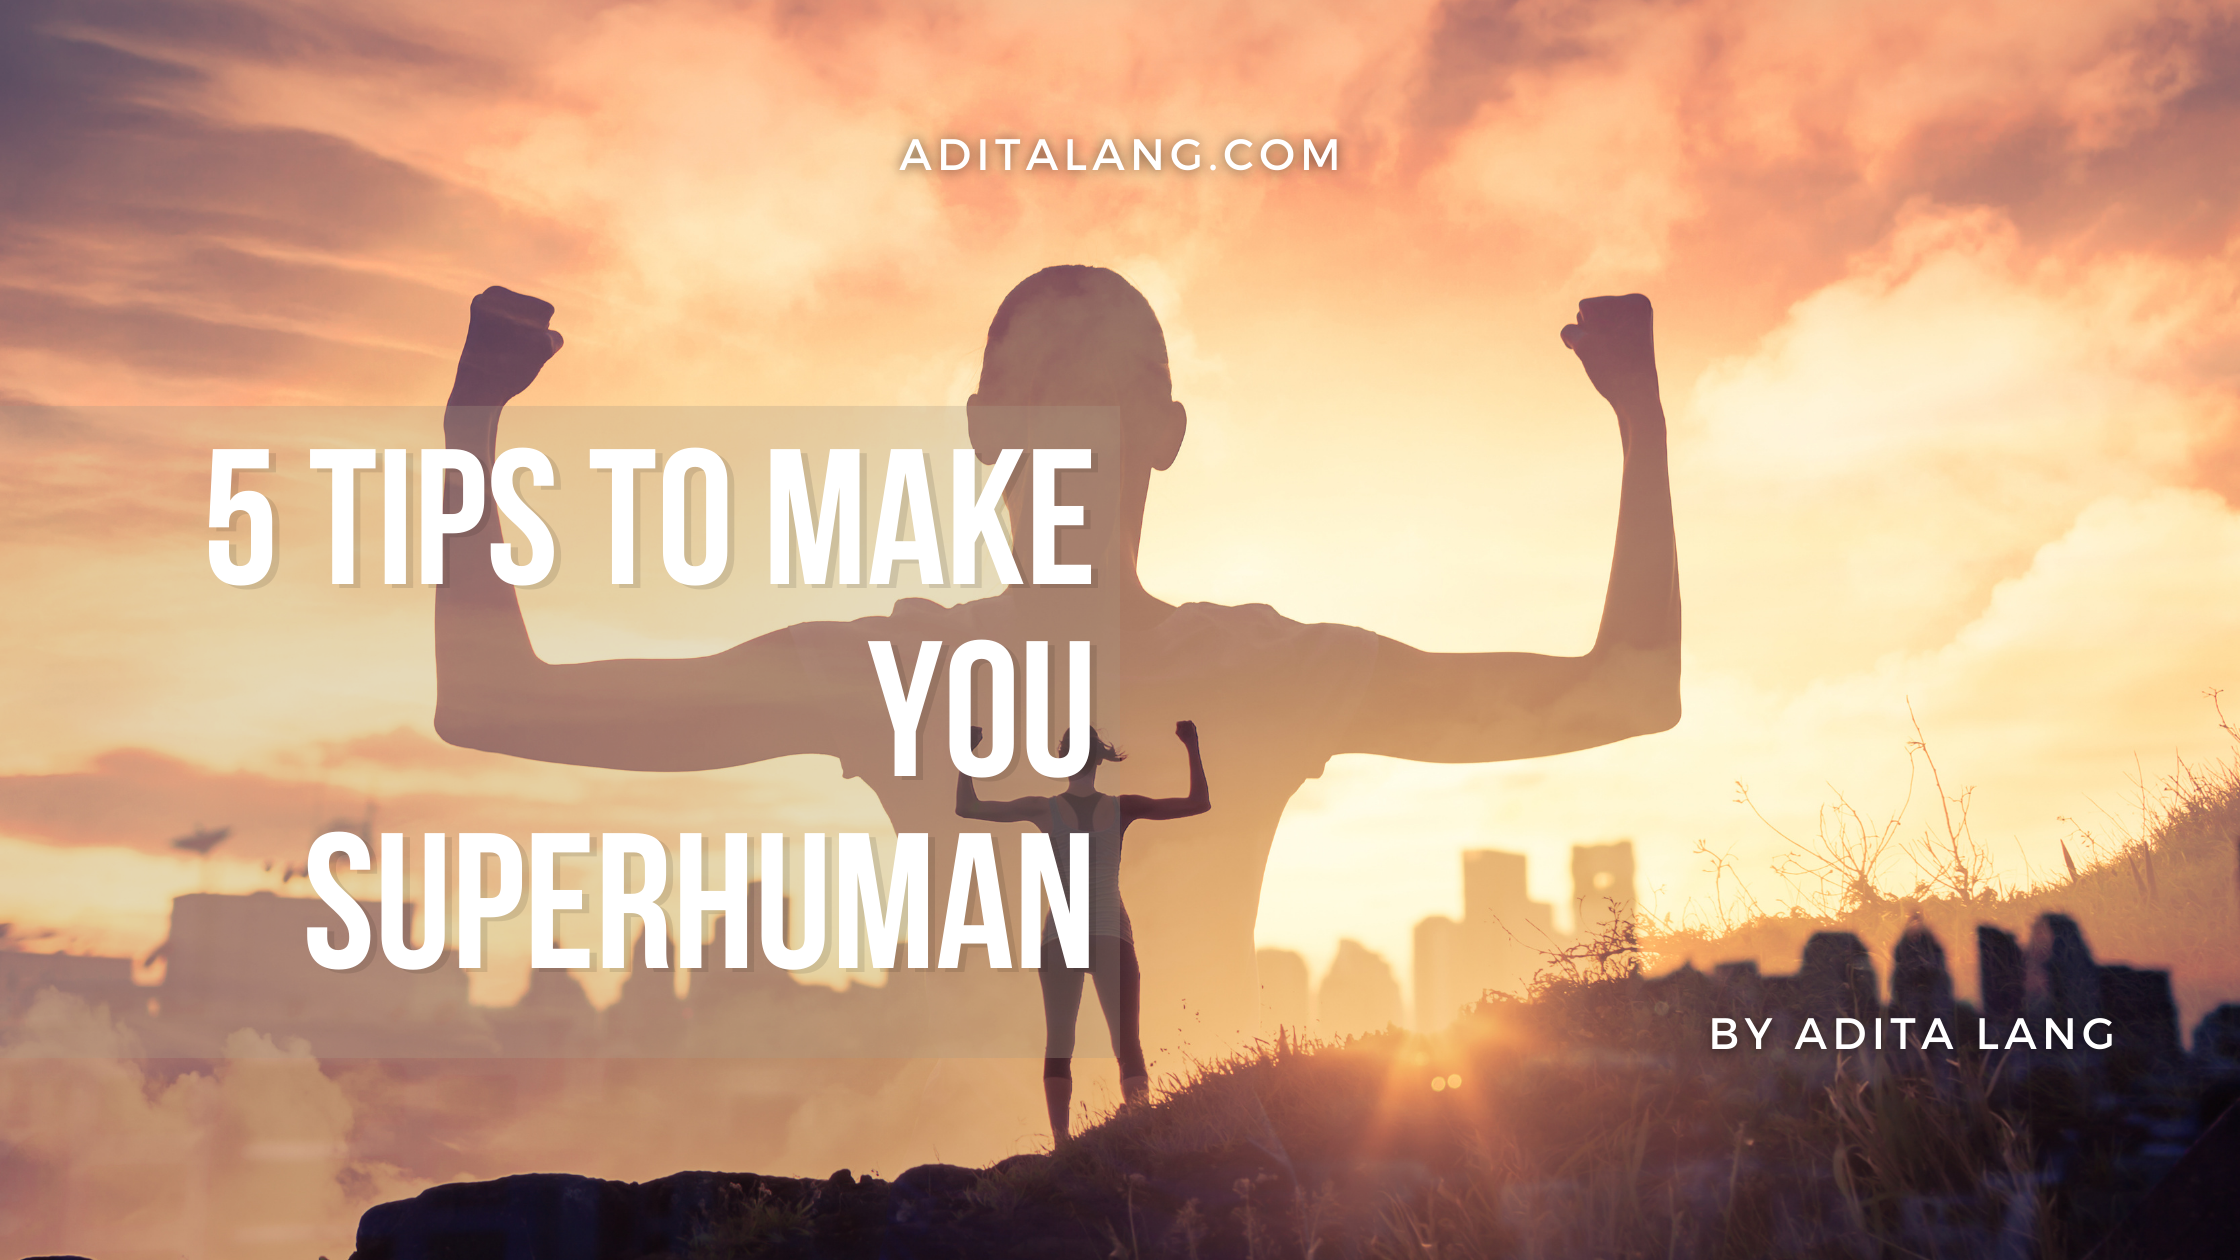 5 tips to make you superhuman www.aditalang.com